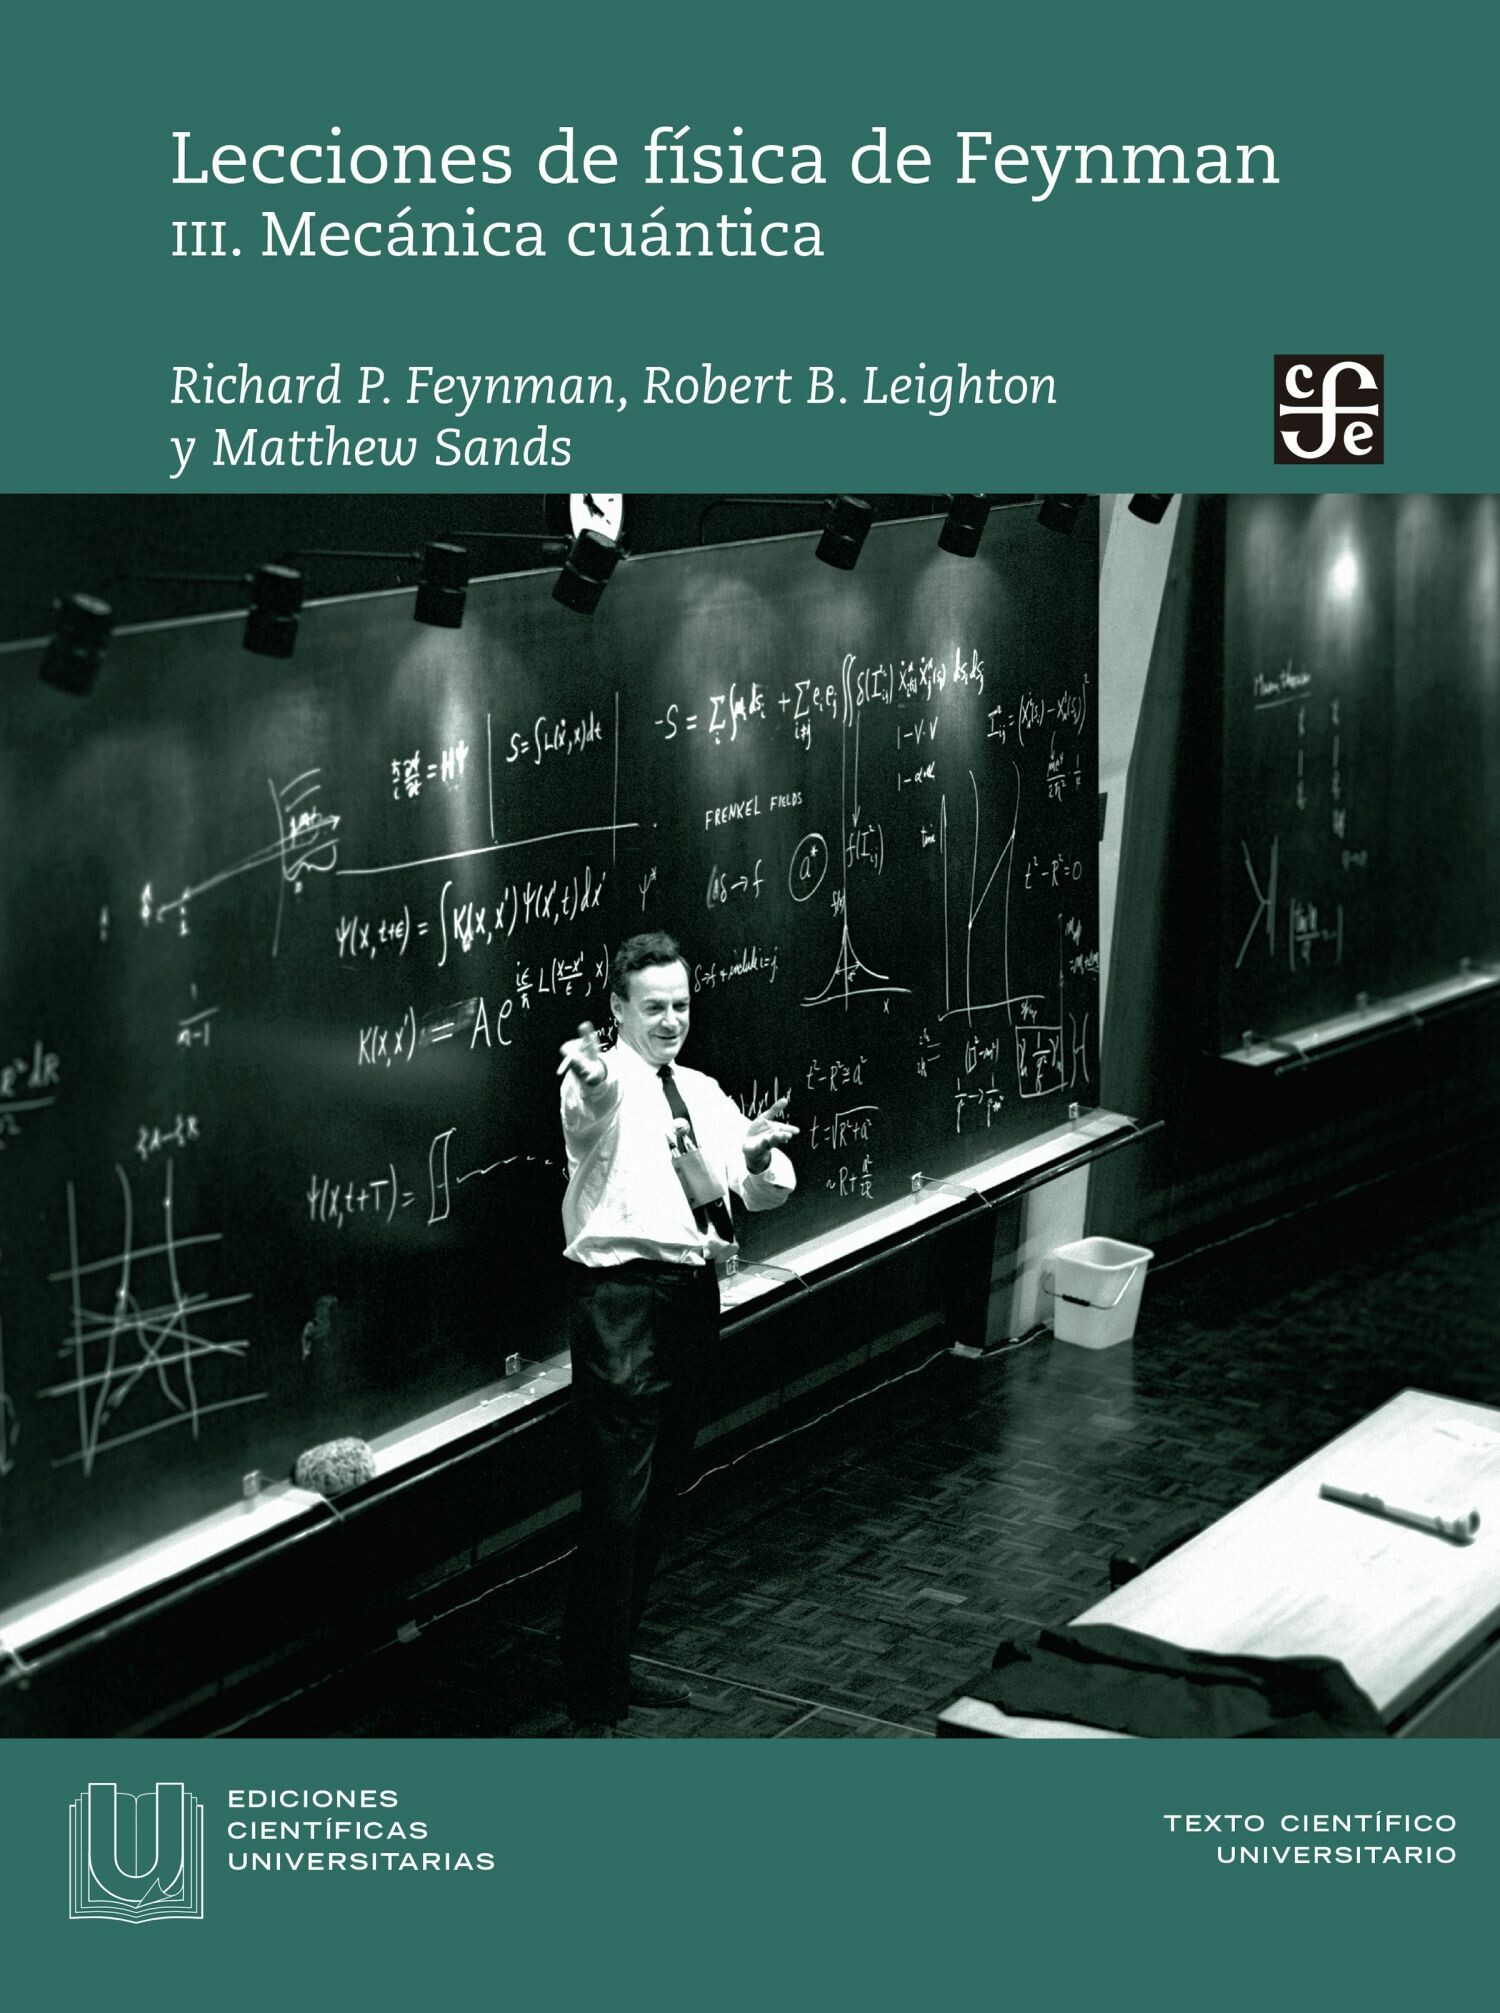 Lecciones de fi?sica de Feynman, III